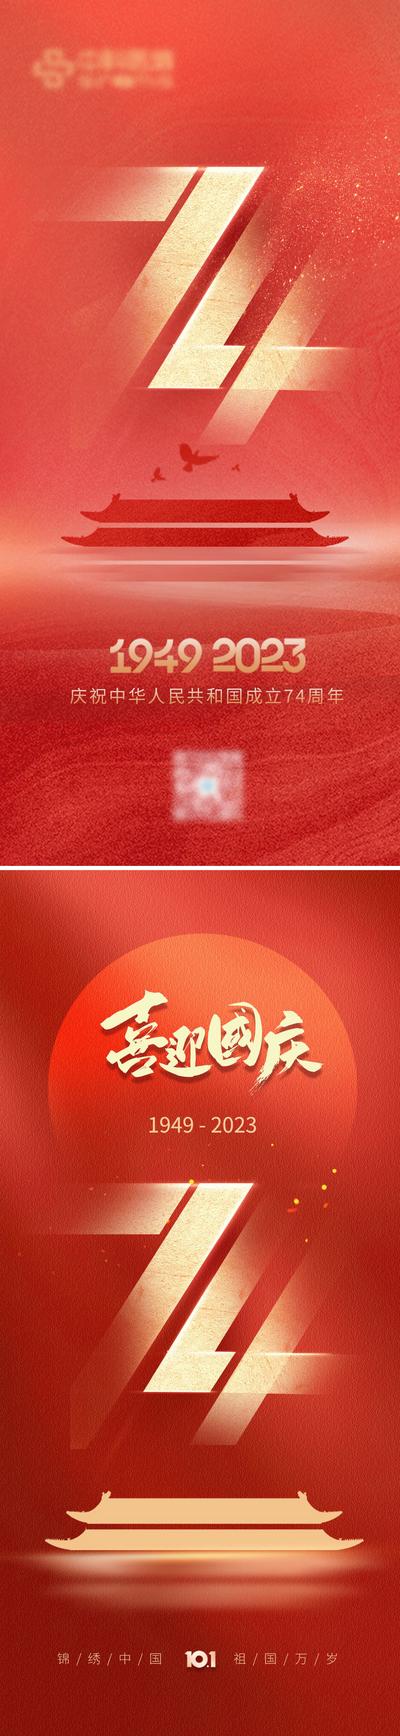 南门网 海报 公历节日 国庆节 74周年 欢度国庆 创意